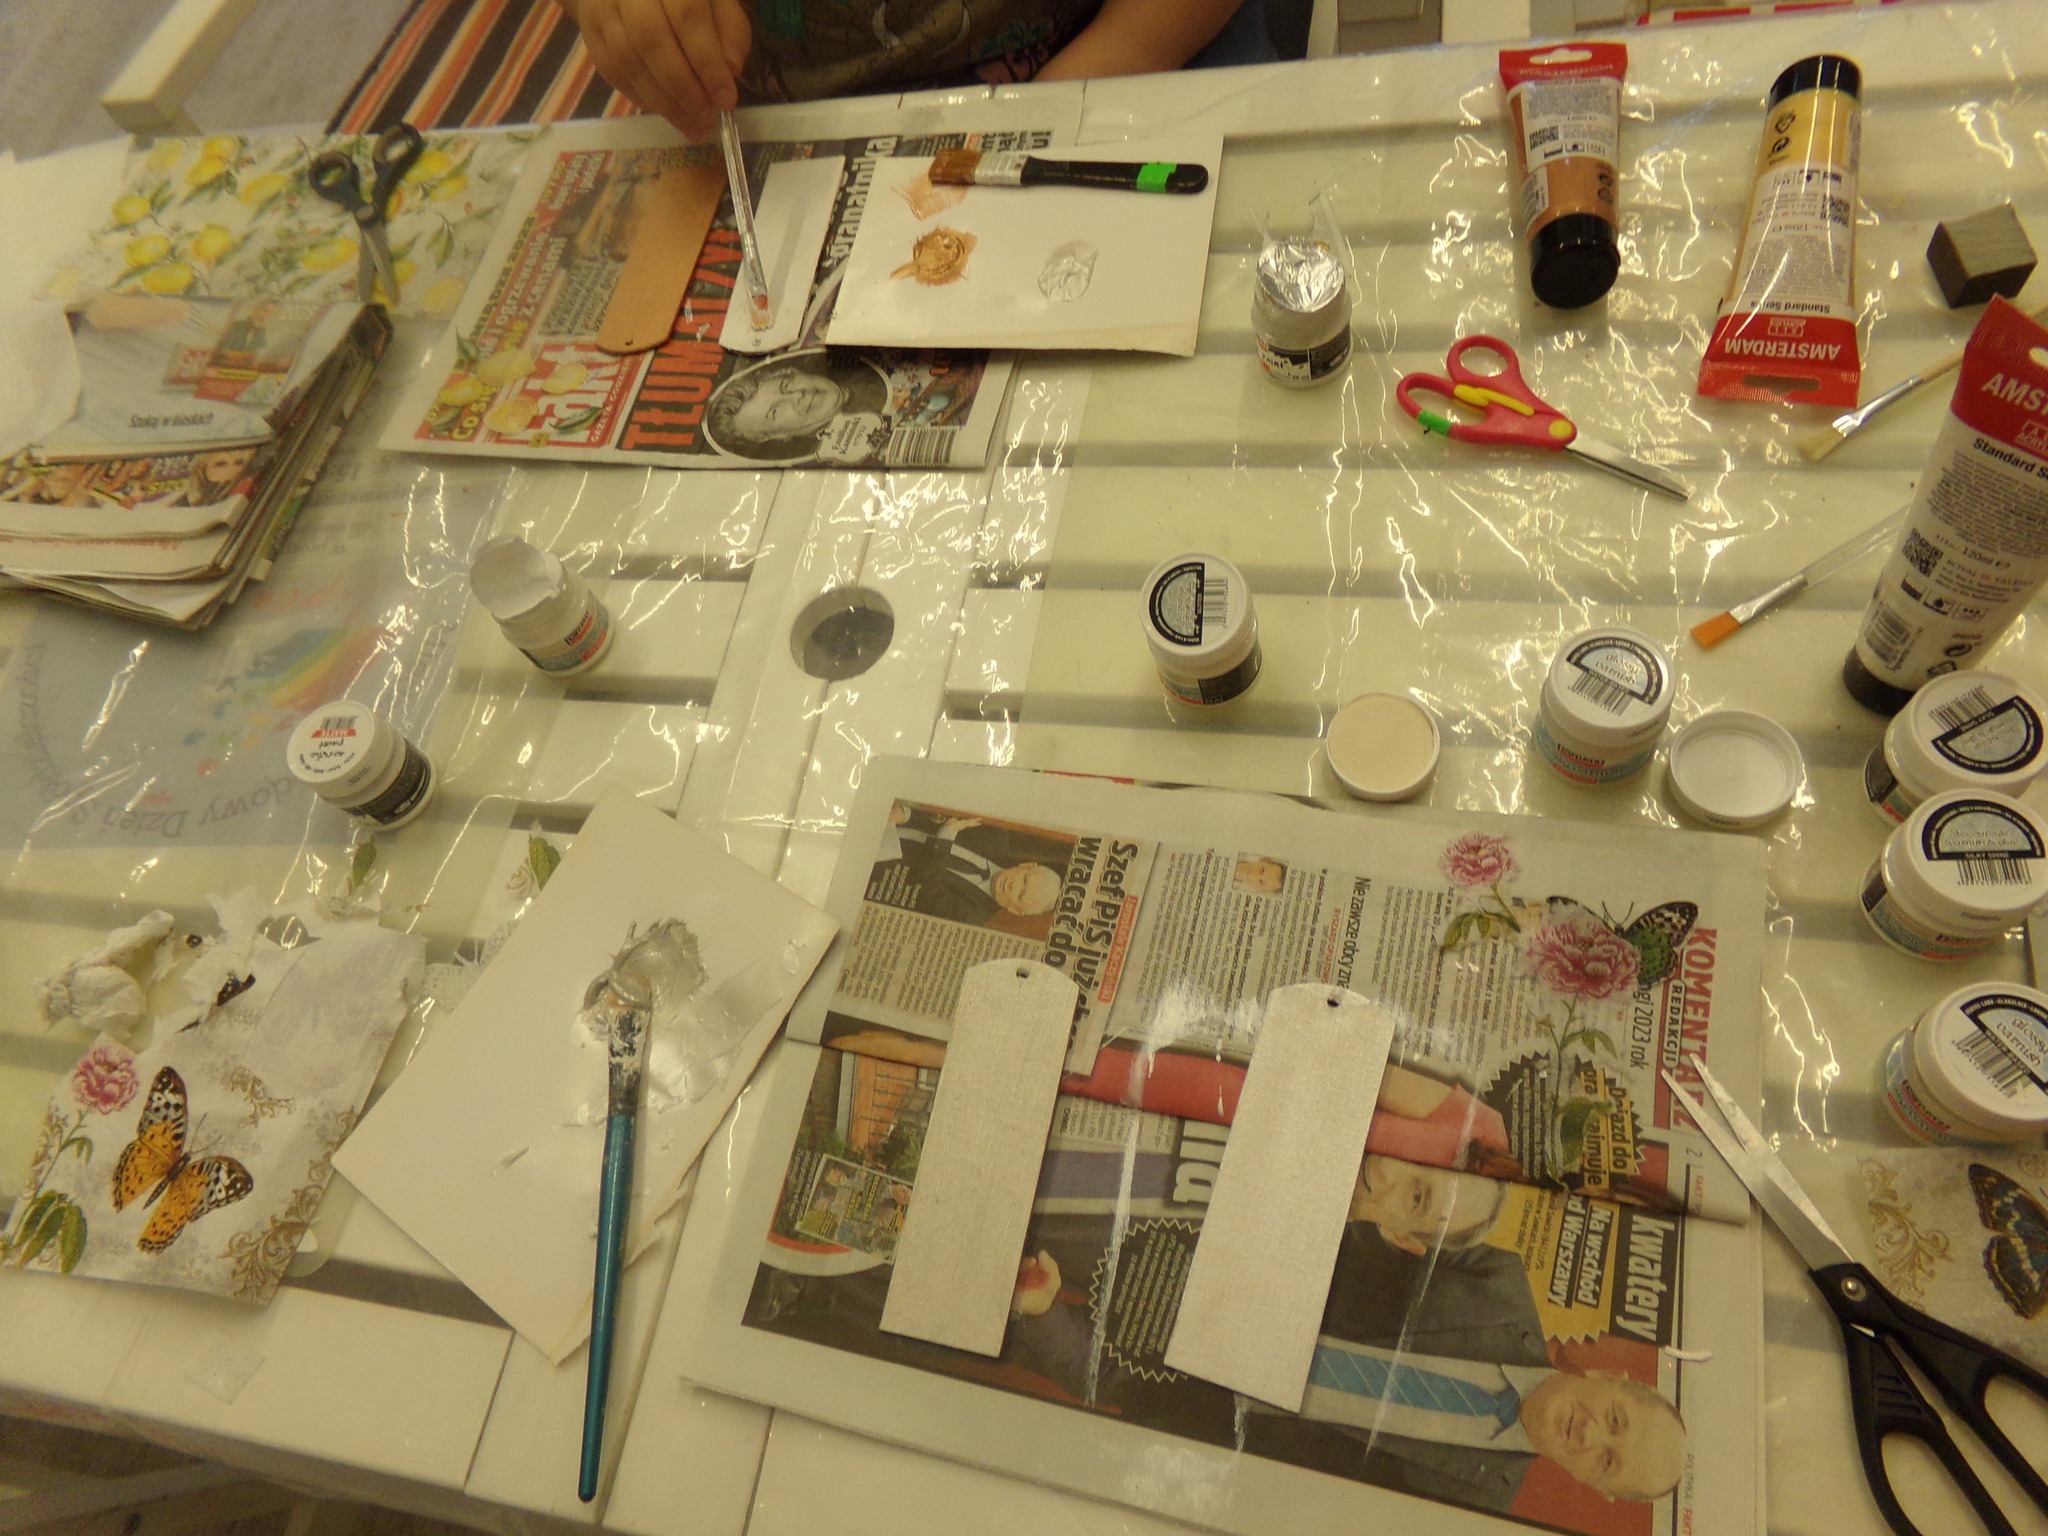 Na zdjęciu  leżą na stole materiały przygotowane do robienia zakładek metodą decoupage (folia, gazety, nożyczki, pędzle i farby).